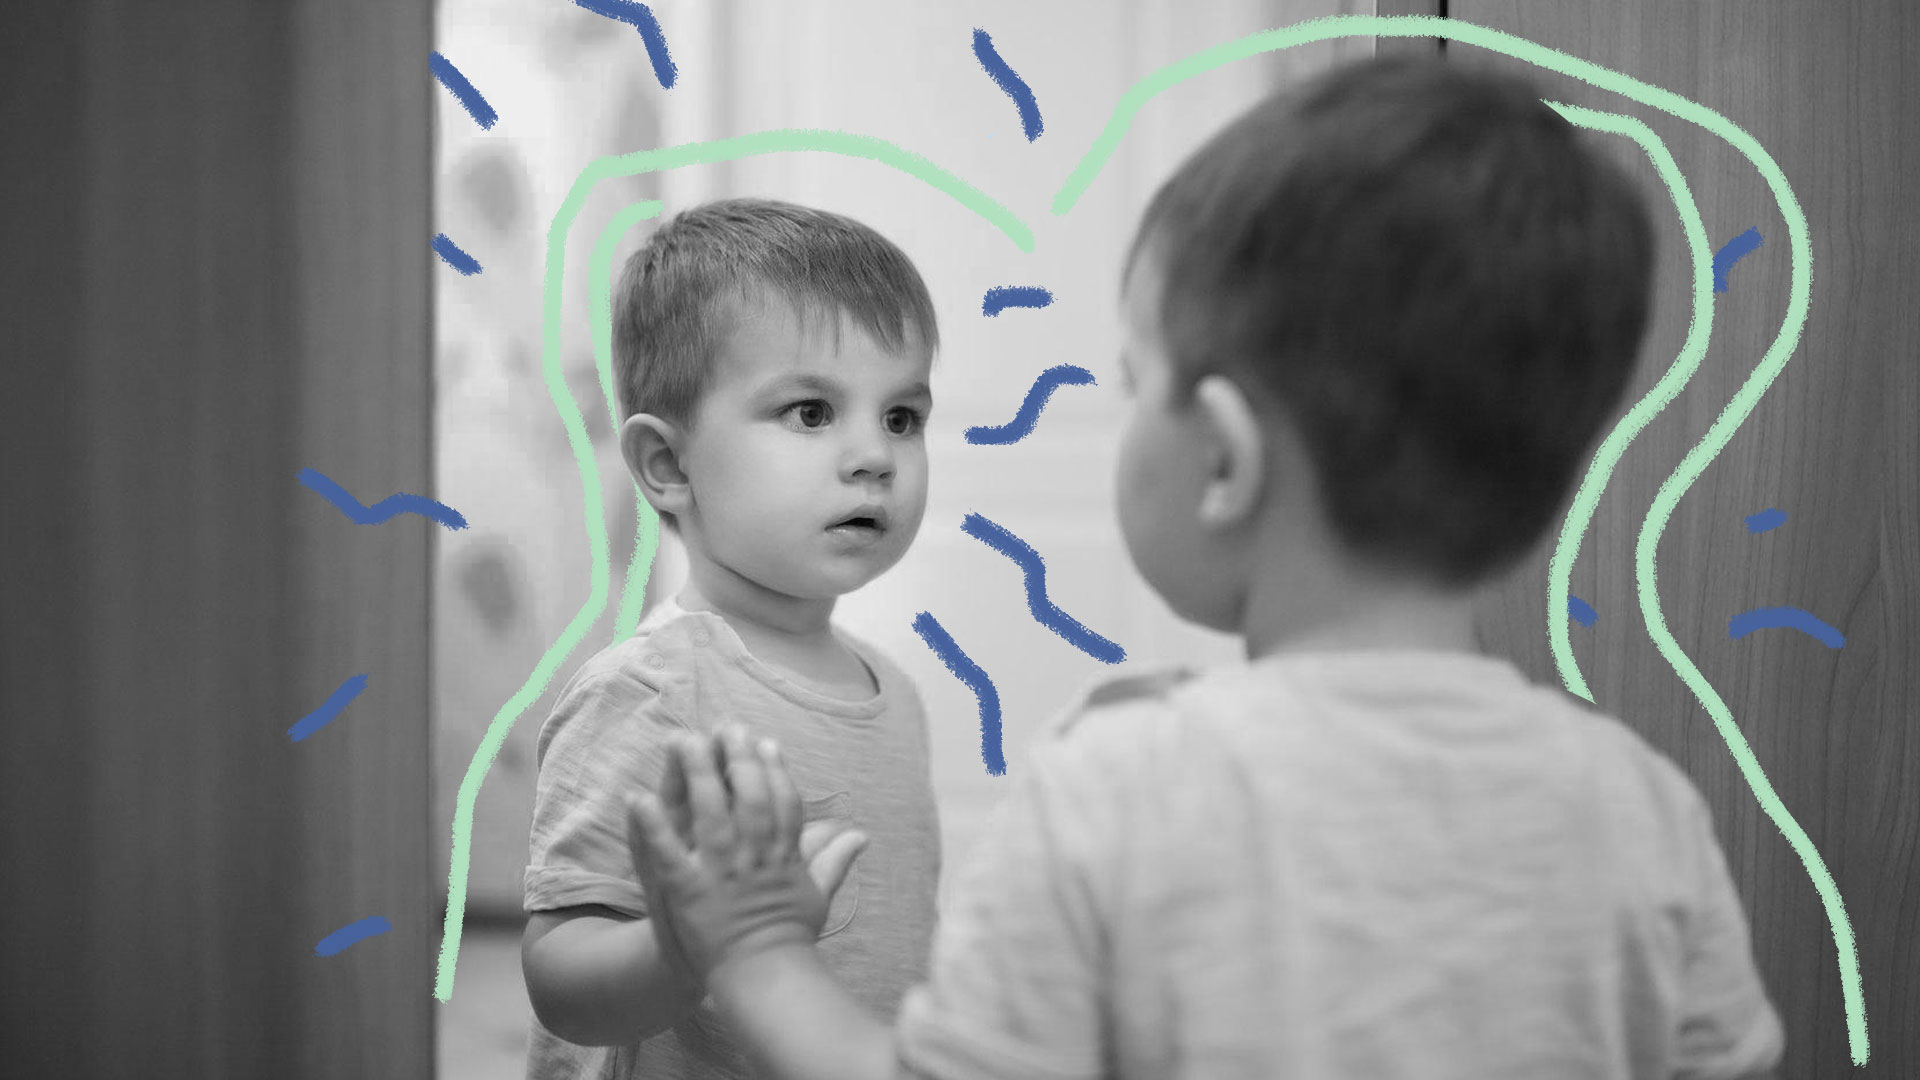 Imagem em preto e branco de um menino, com cabelos curtos, se olhando no espelho.